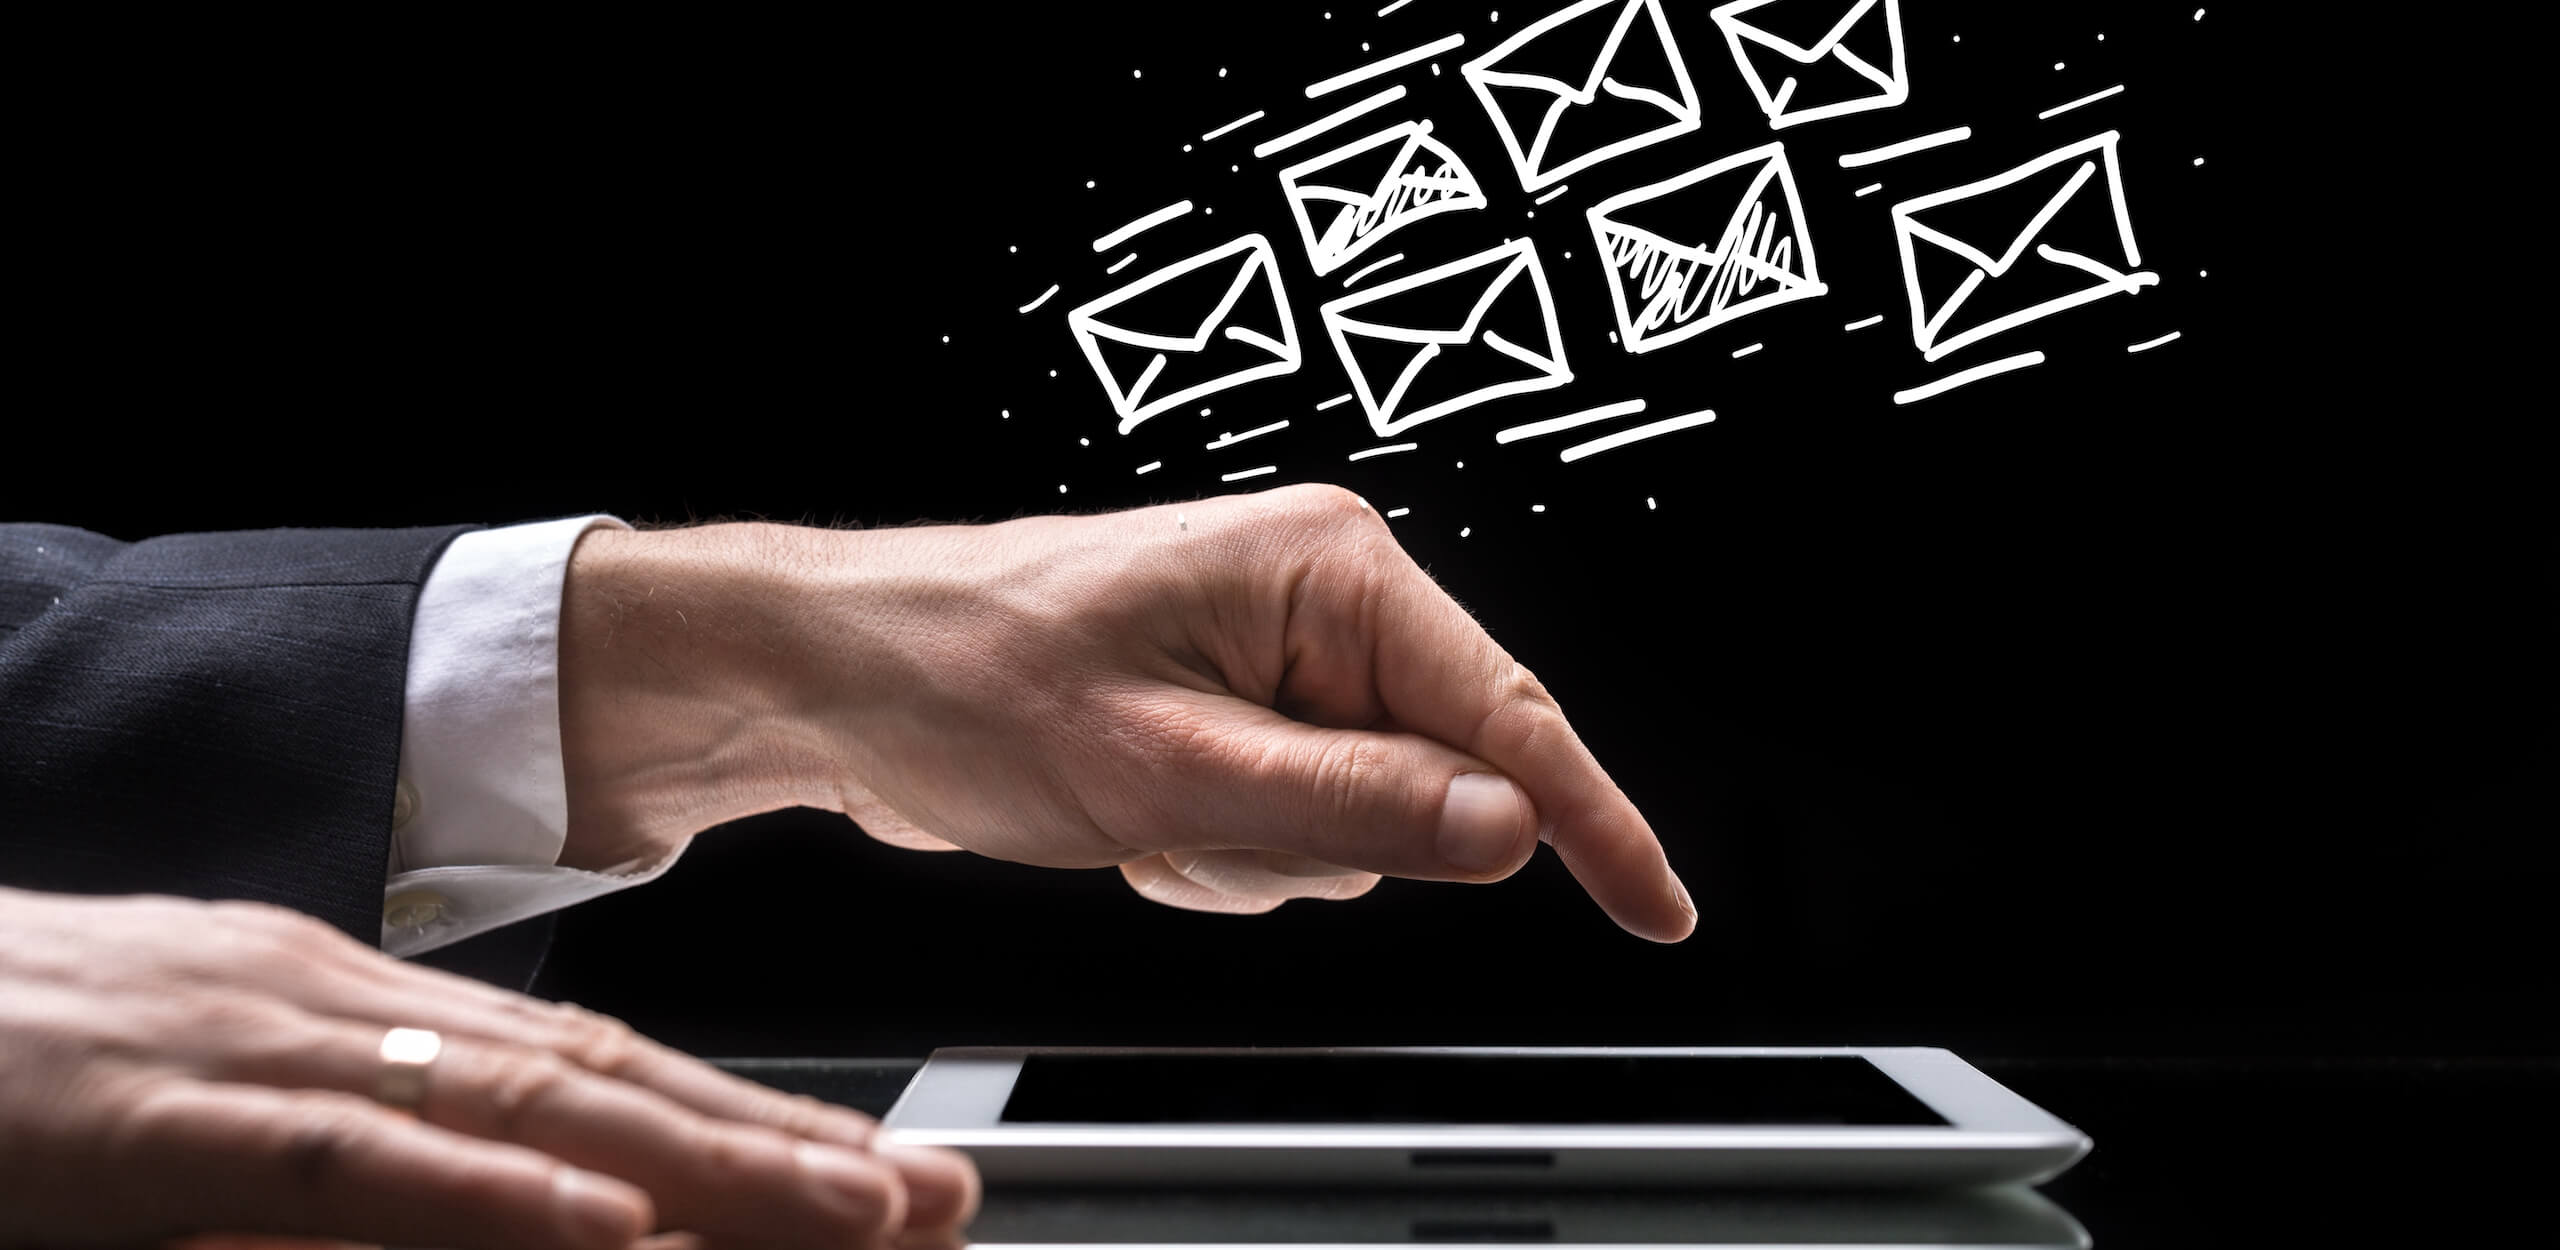 E-Mail Werbung - Was ist erlaubt?